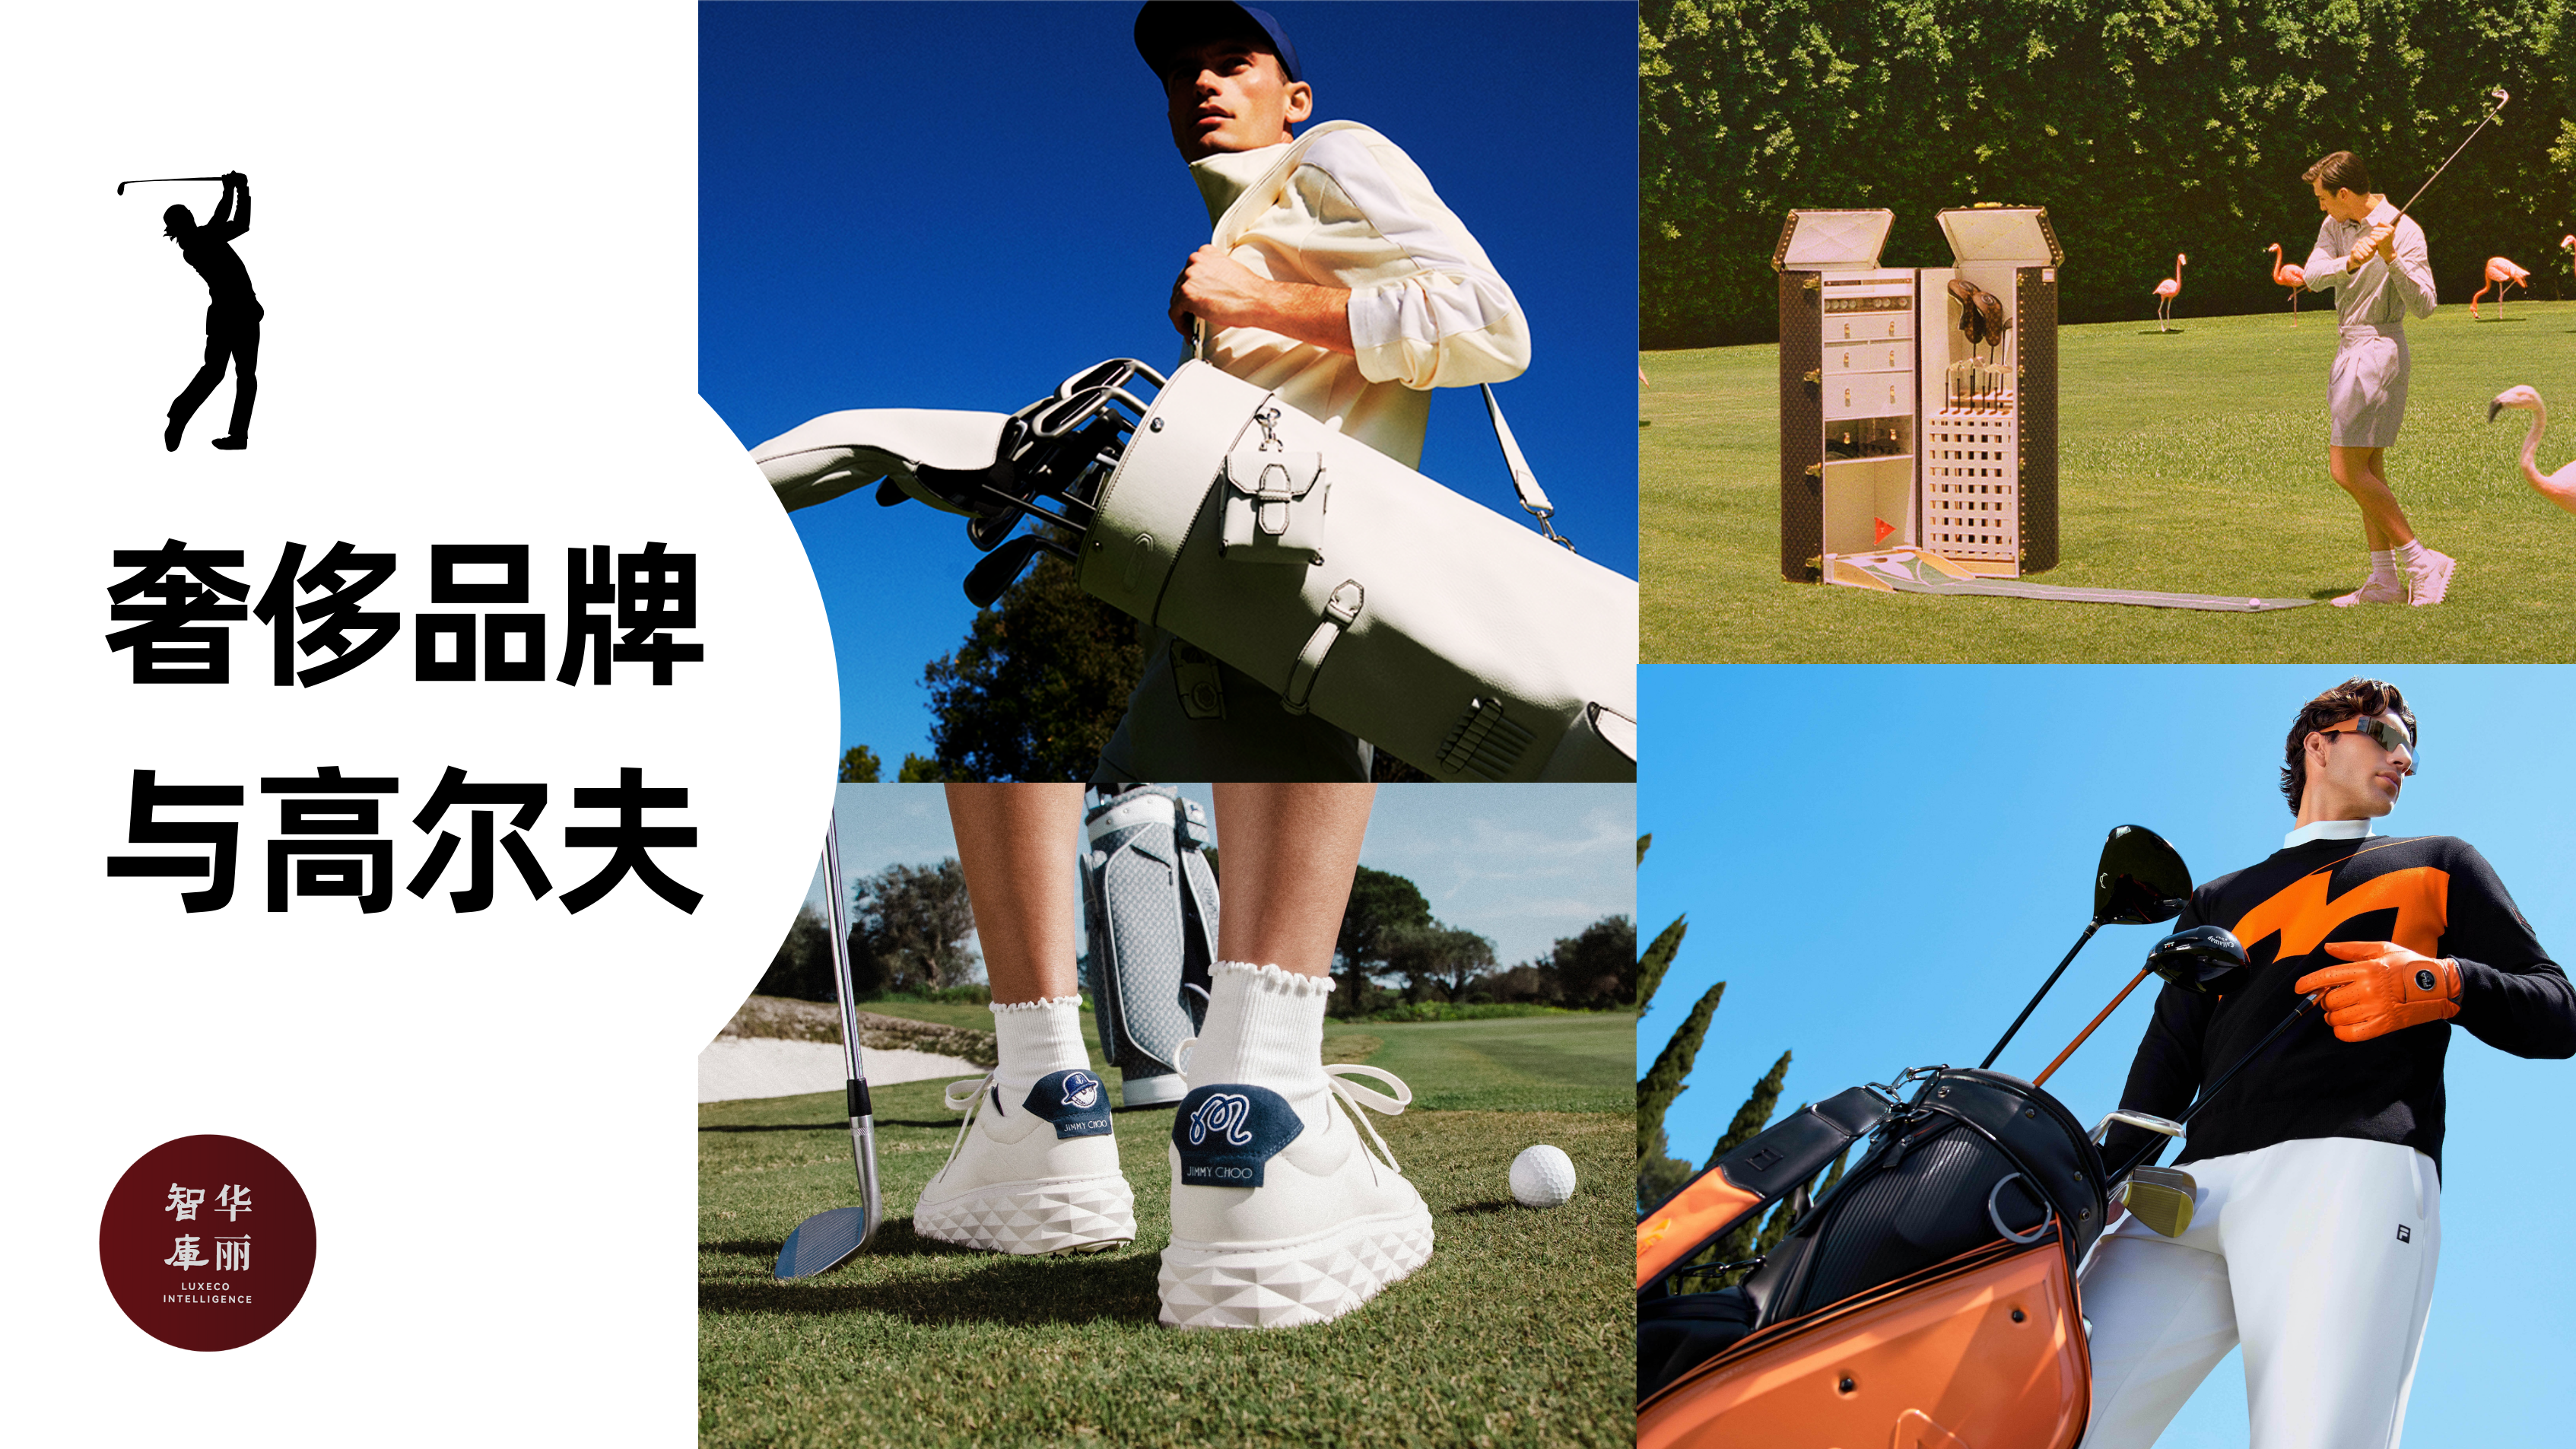 奢侈品牌如何打好“高尔夫”？「华丽智库」发布最新研究报告